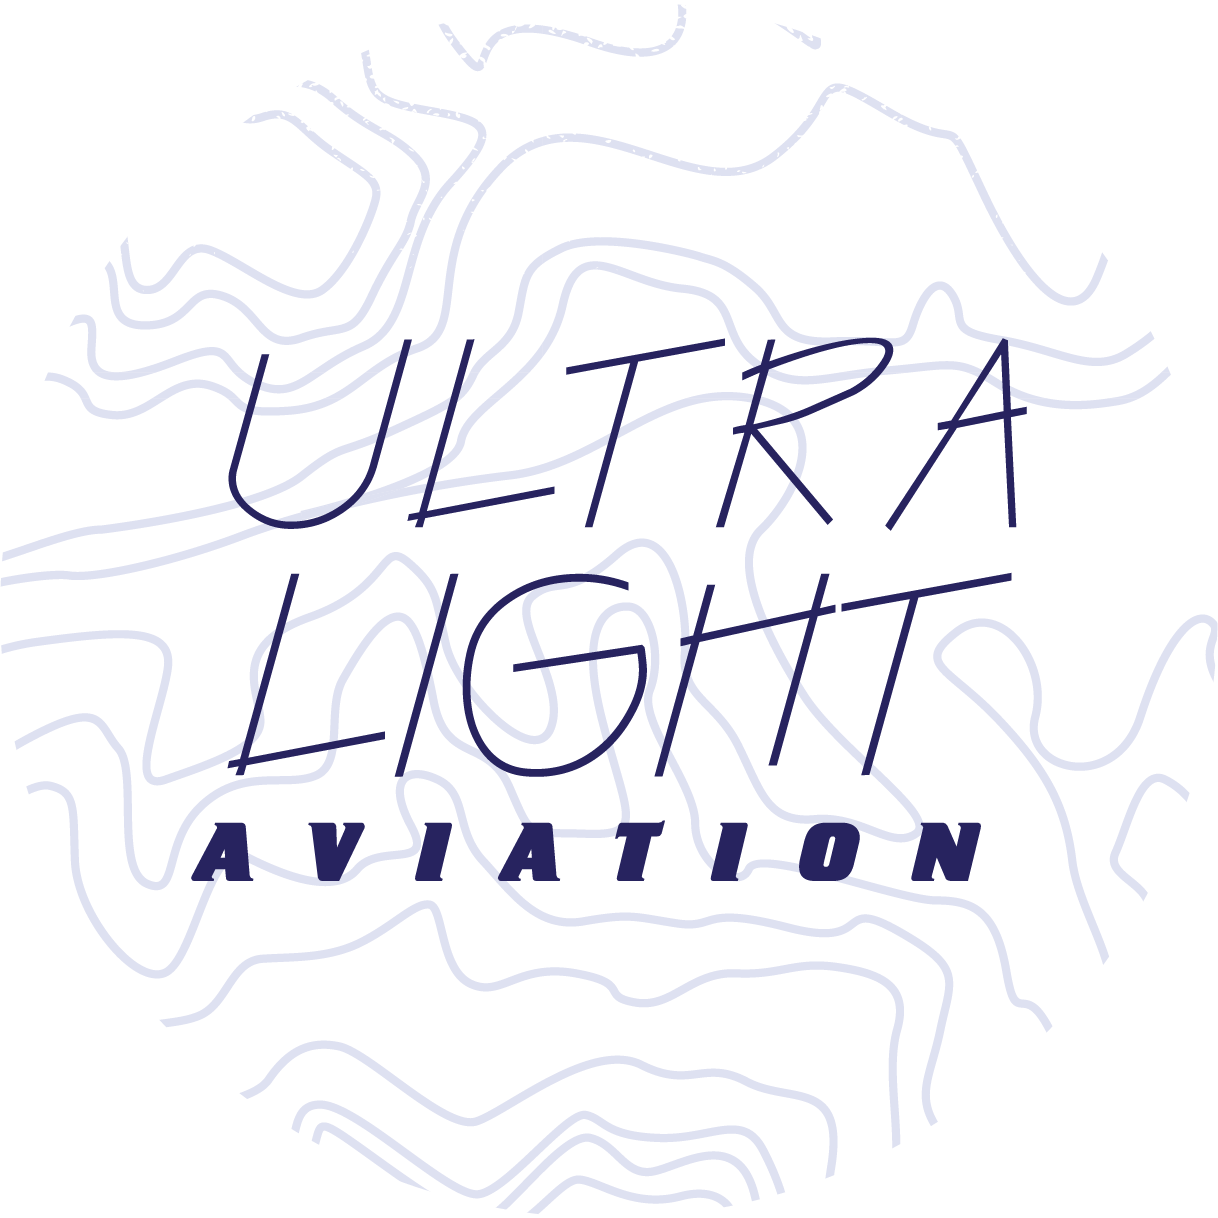 Ultra light aviation